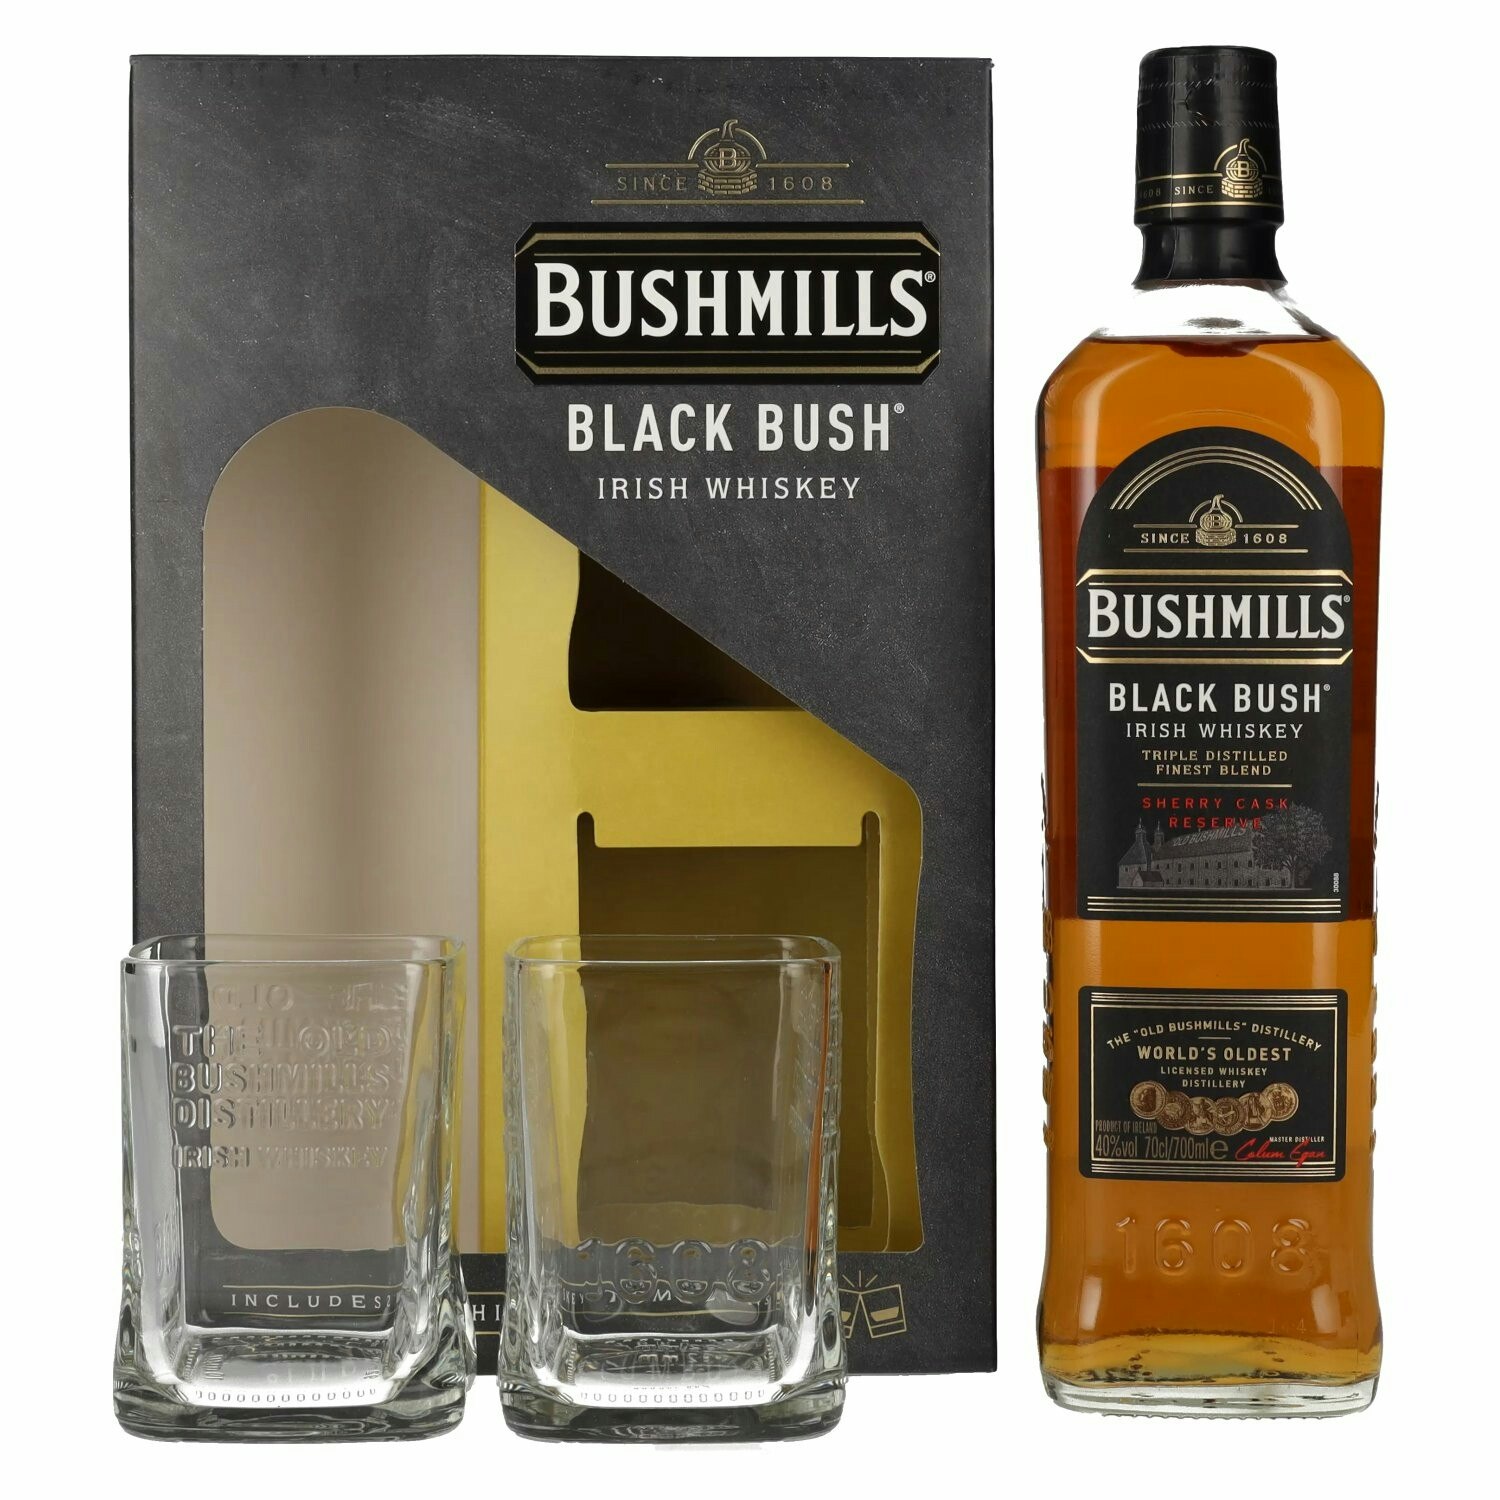 Bushmills BLACK BUSH Irish Whiskey 40% Vol. 0,7l in Giftbox with 2 glasses